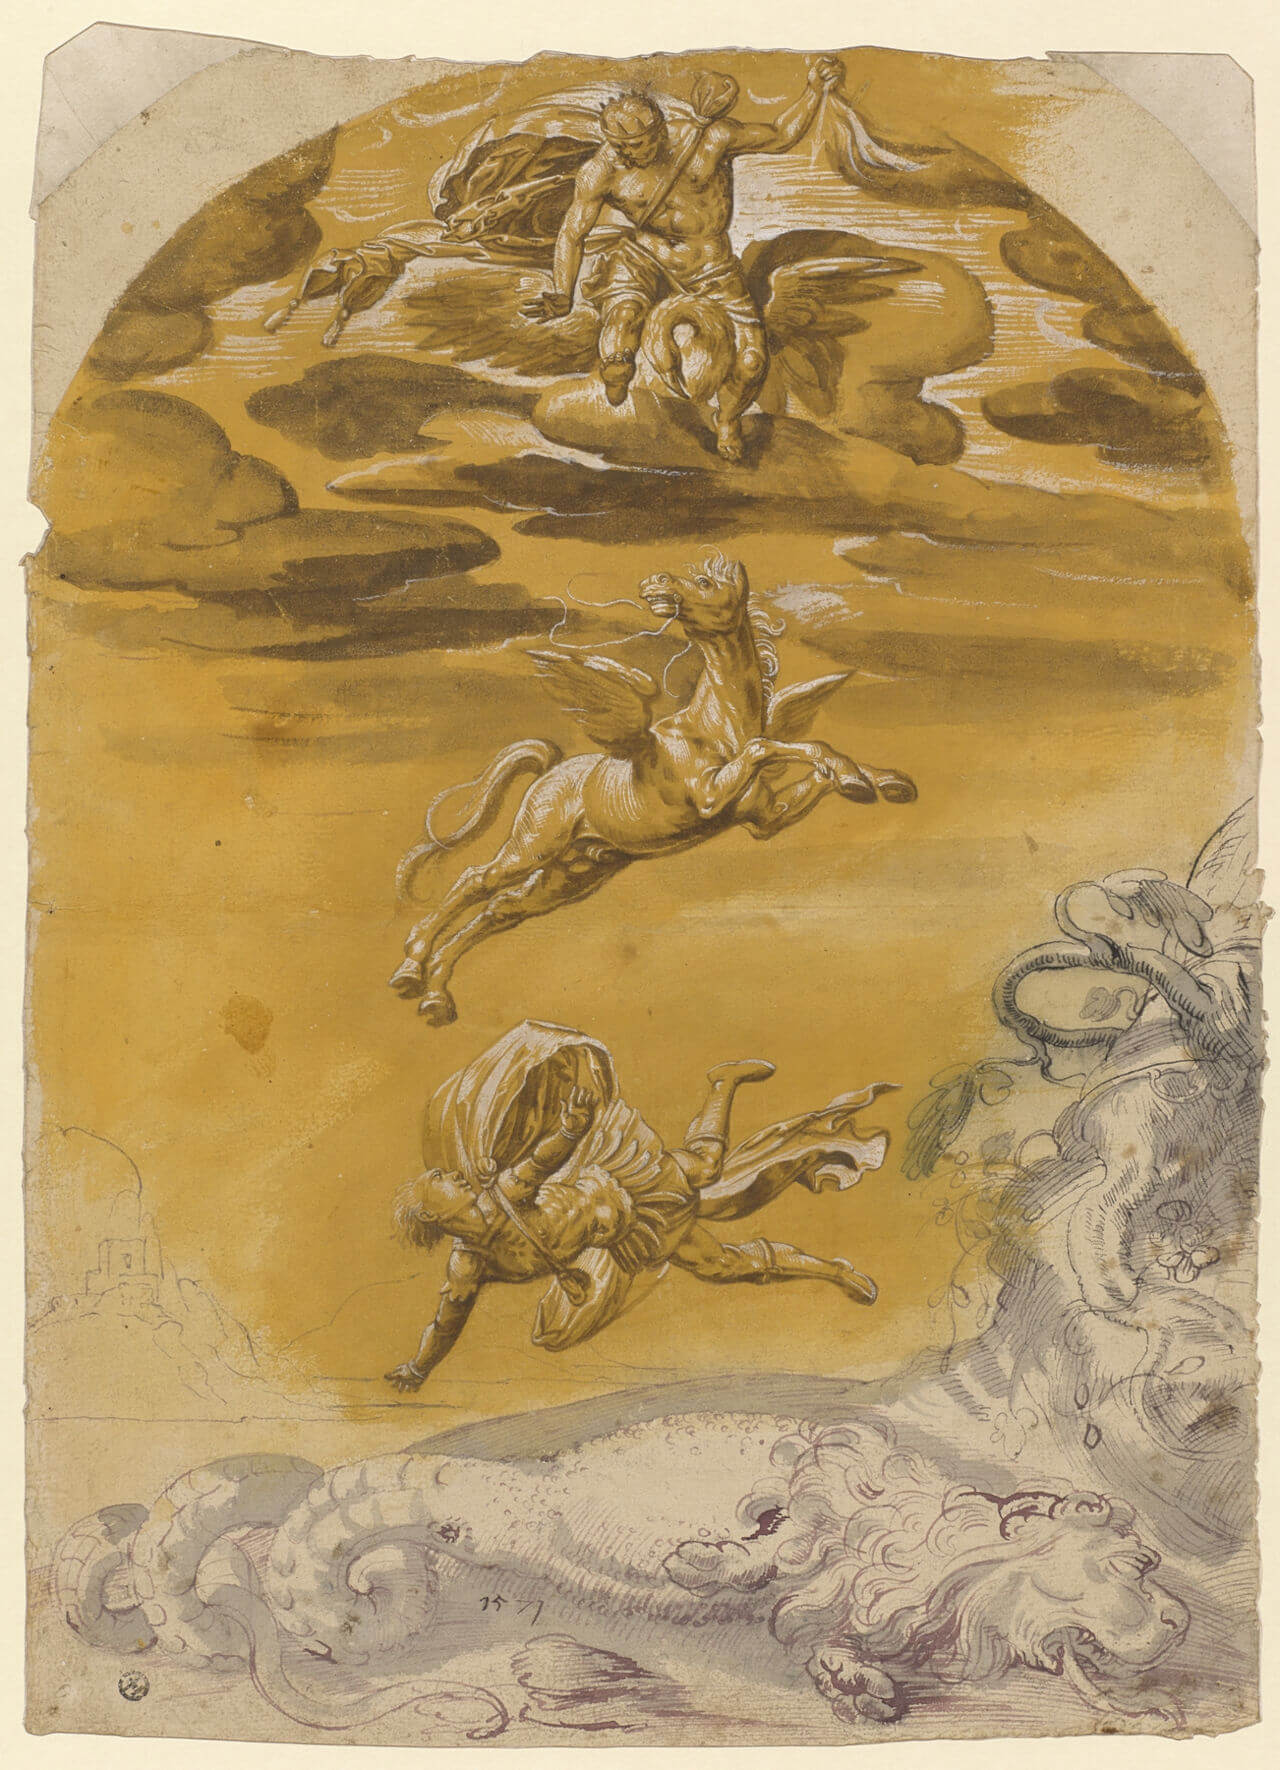 Bellerophon auf Pegasos tötet die Chimäre - Bild von Peter Paul Rubens